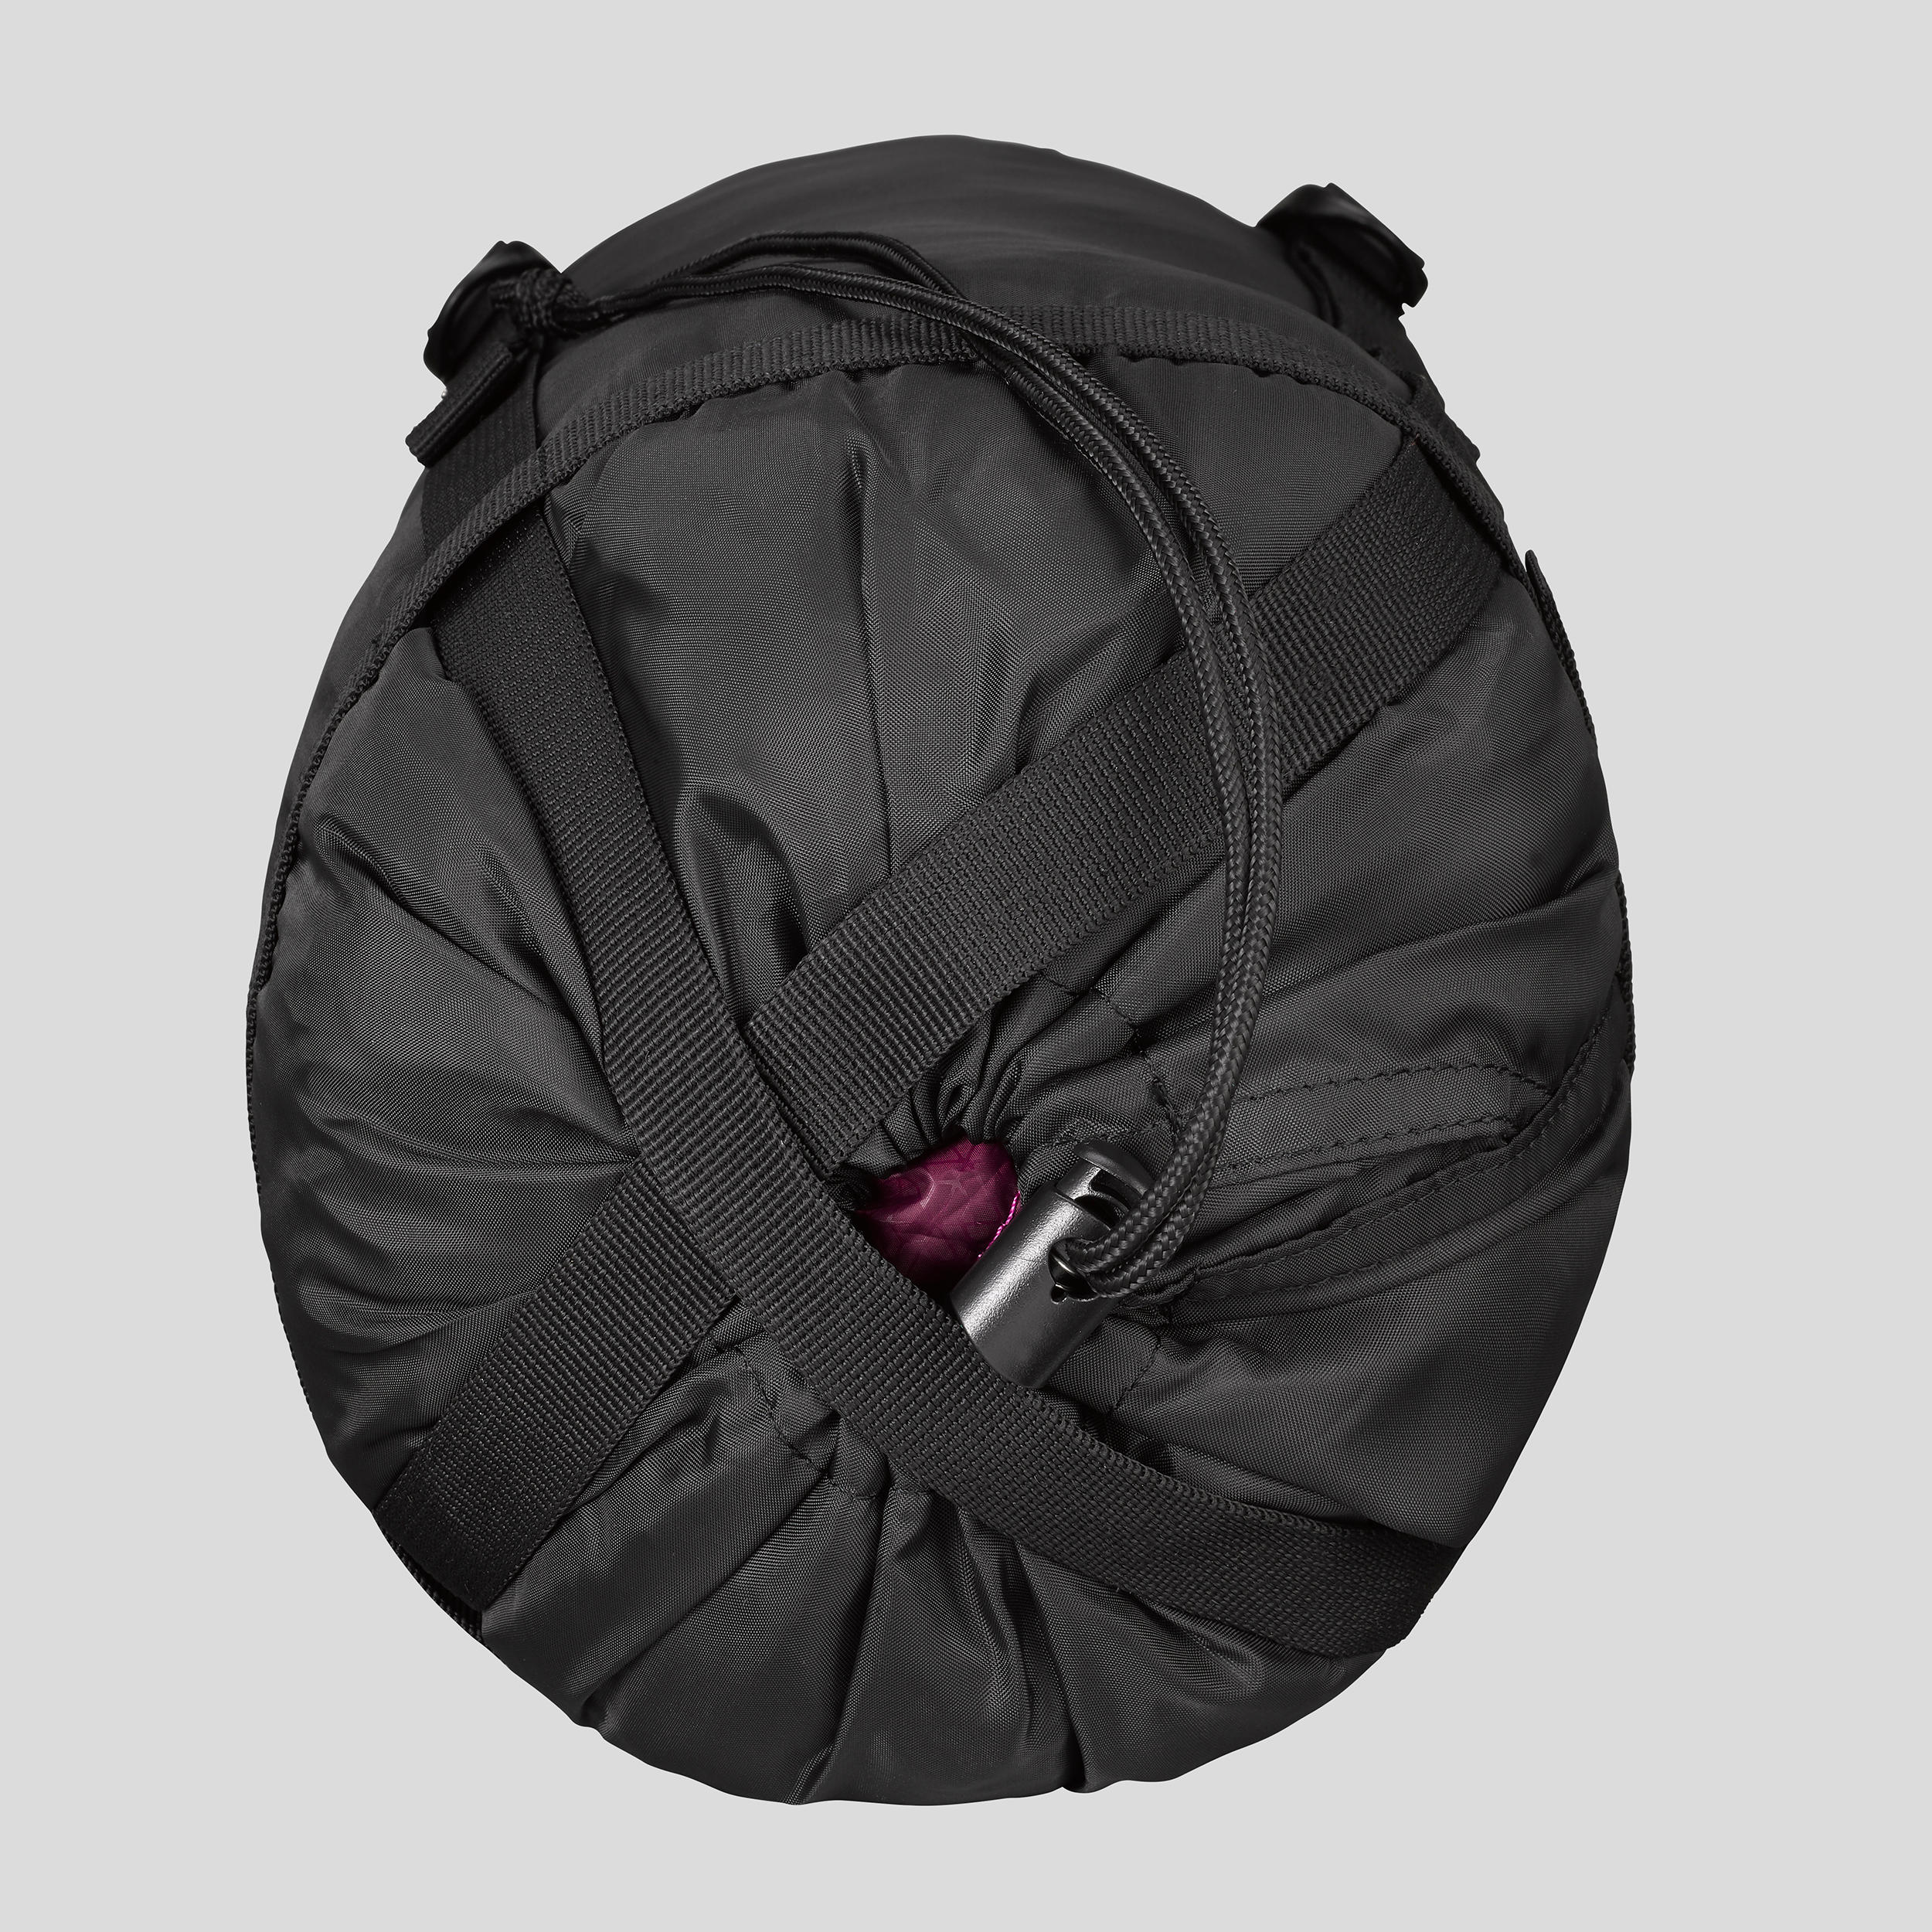 Buy Trekking Sleeping Bag - MT500 -5°C Online | Decathlon